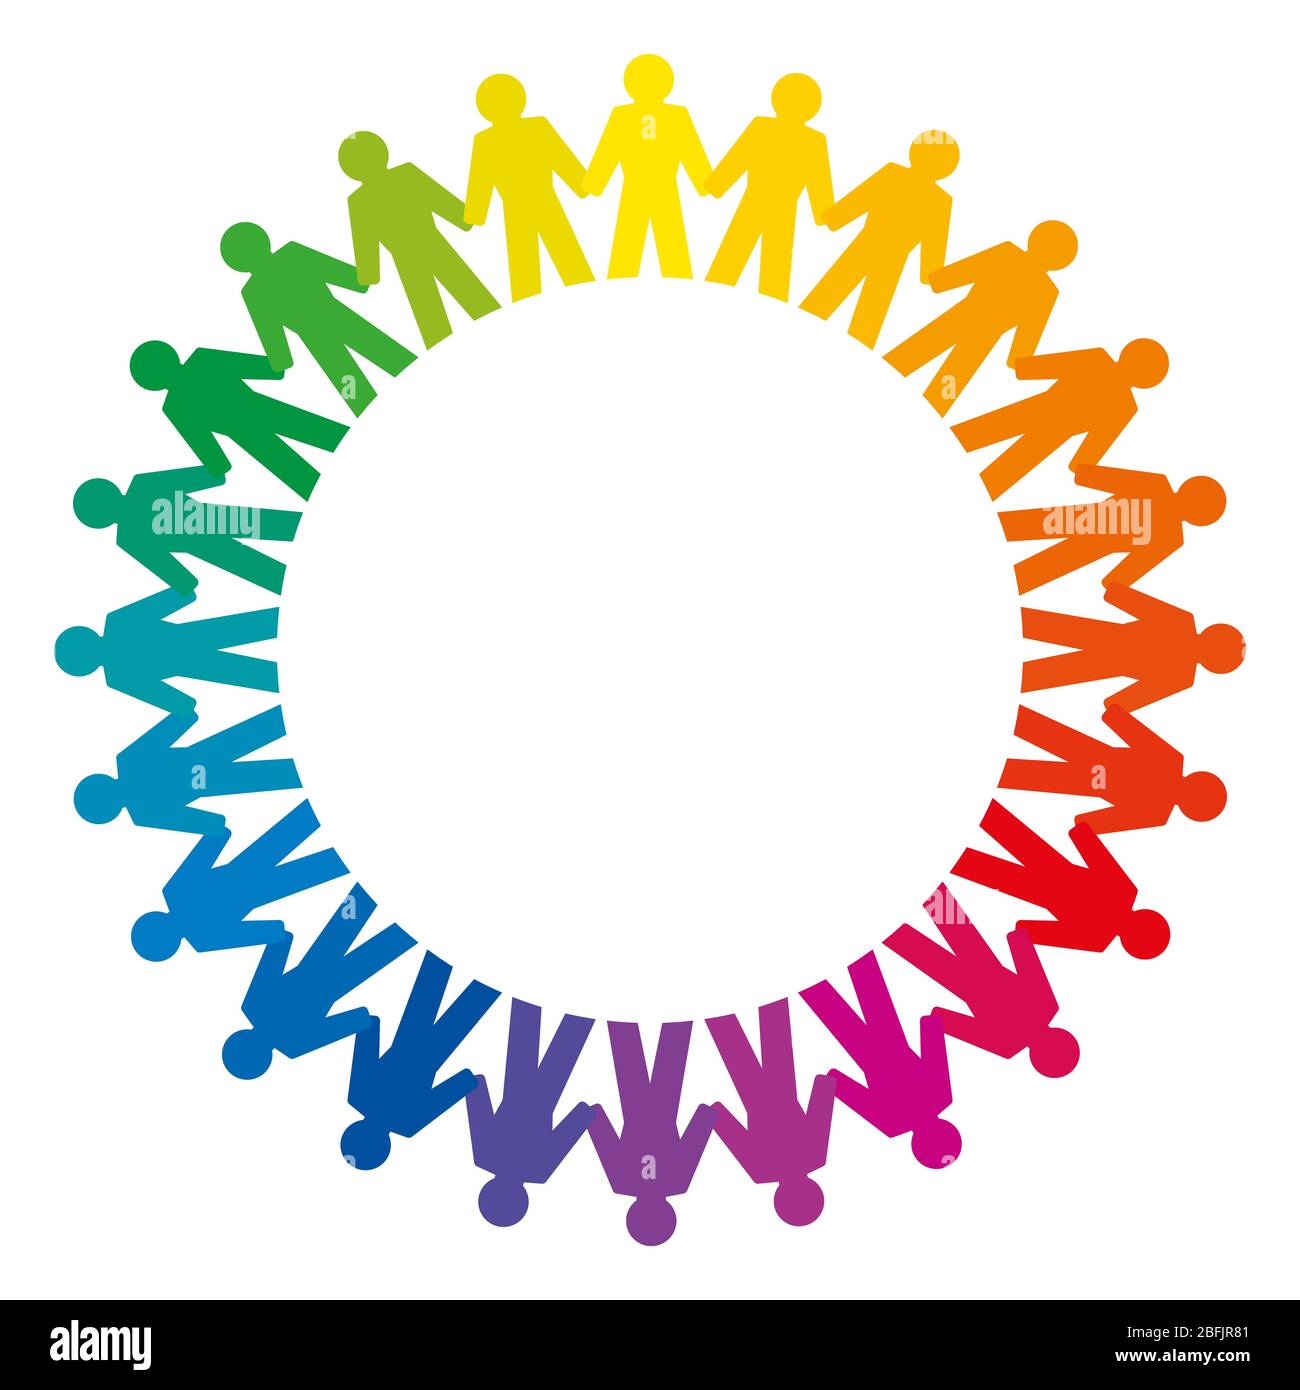 Les gens qui tiennent les mains forment un grand cercle arc-en-ciel. Symbole abstrait des personnes connectées qui se tiennent un cercle pour exprimer l'amitié, l'amour et l'harmonie. Banque D'Images